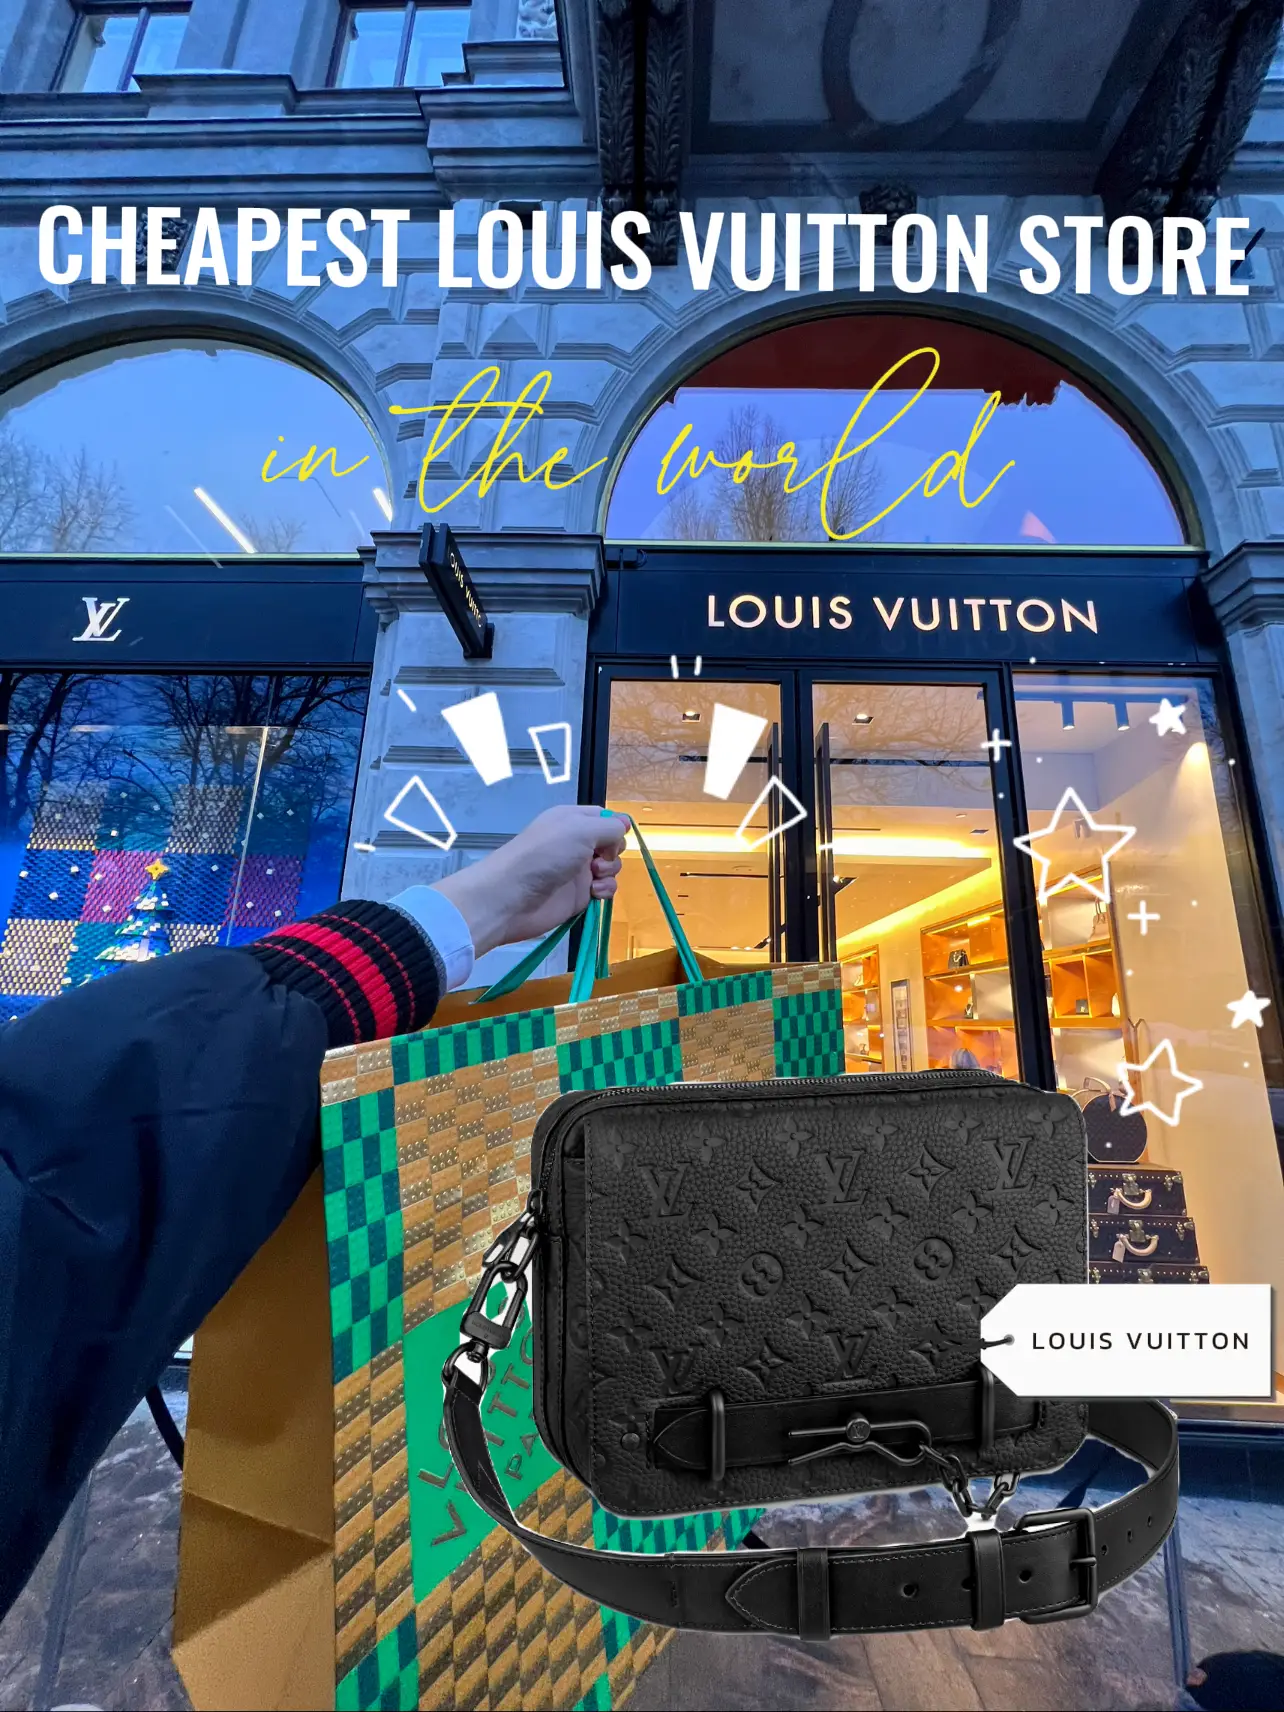 Louis Vuitton Helsinki Store in Helsinki, Finland